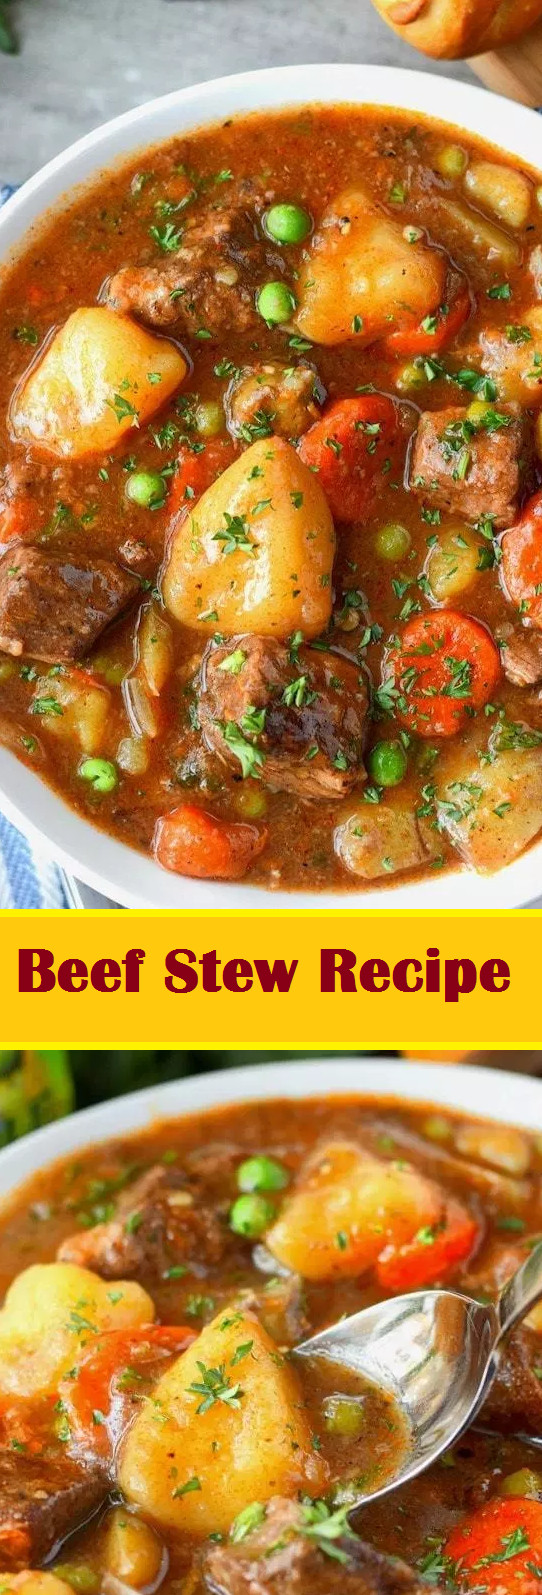 Food Network Beef Stew
 Beef Stew Recipe – Network Food in 2020